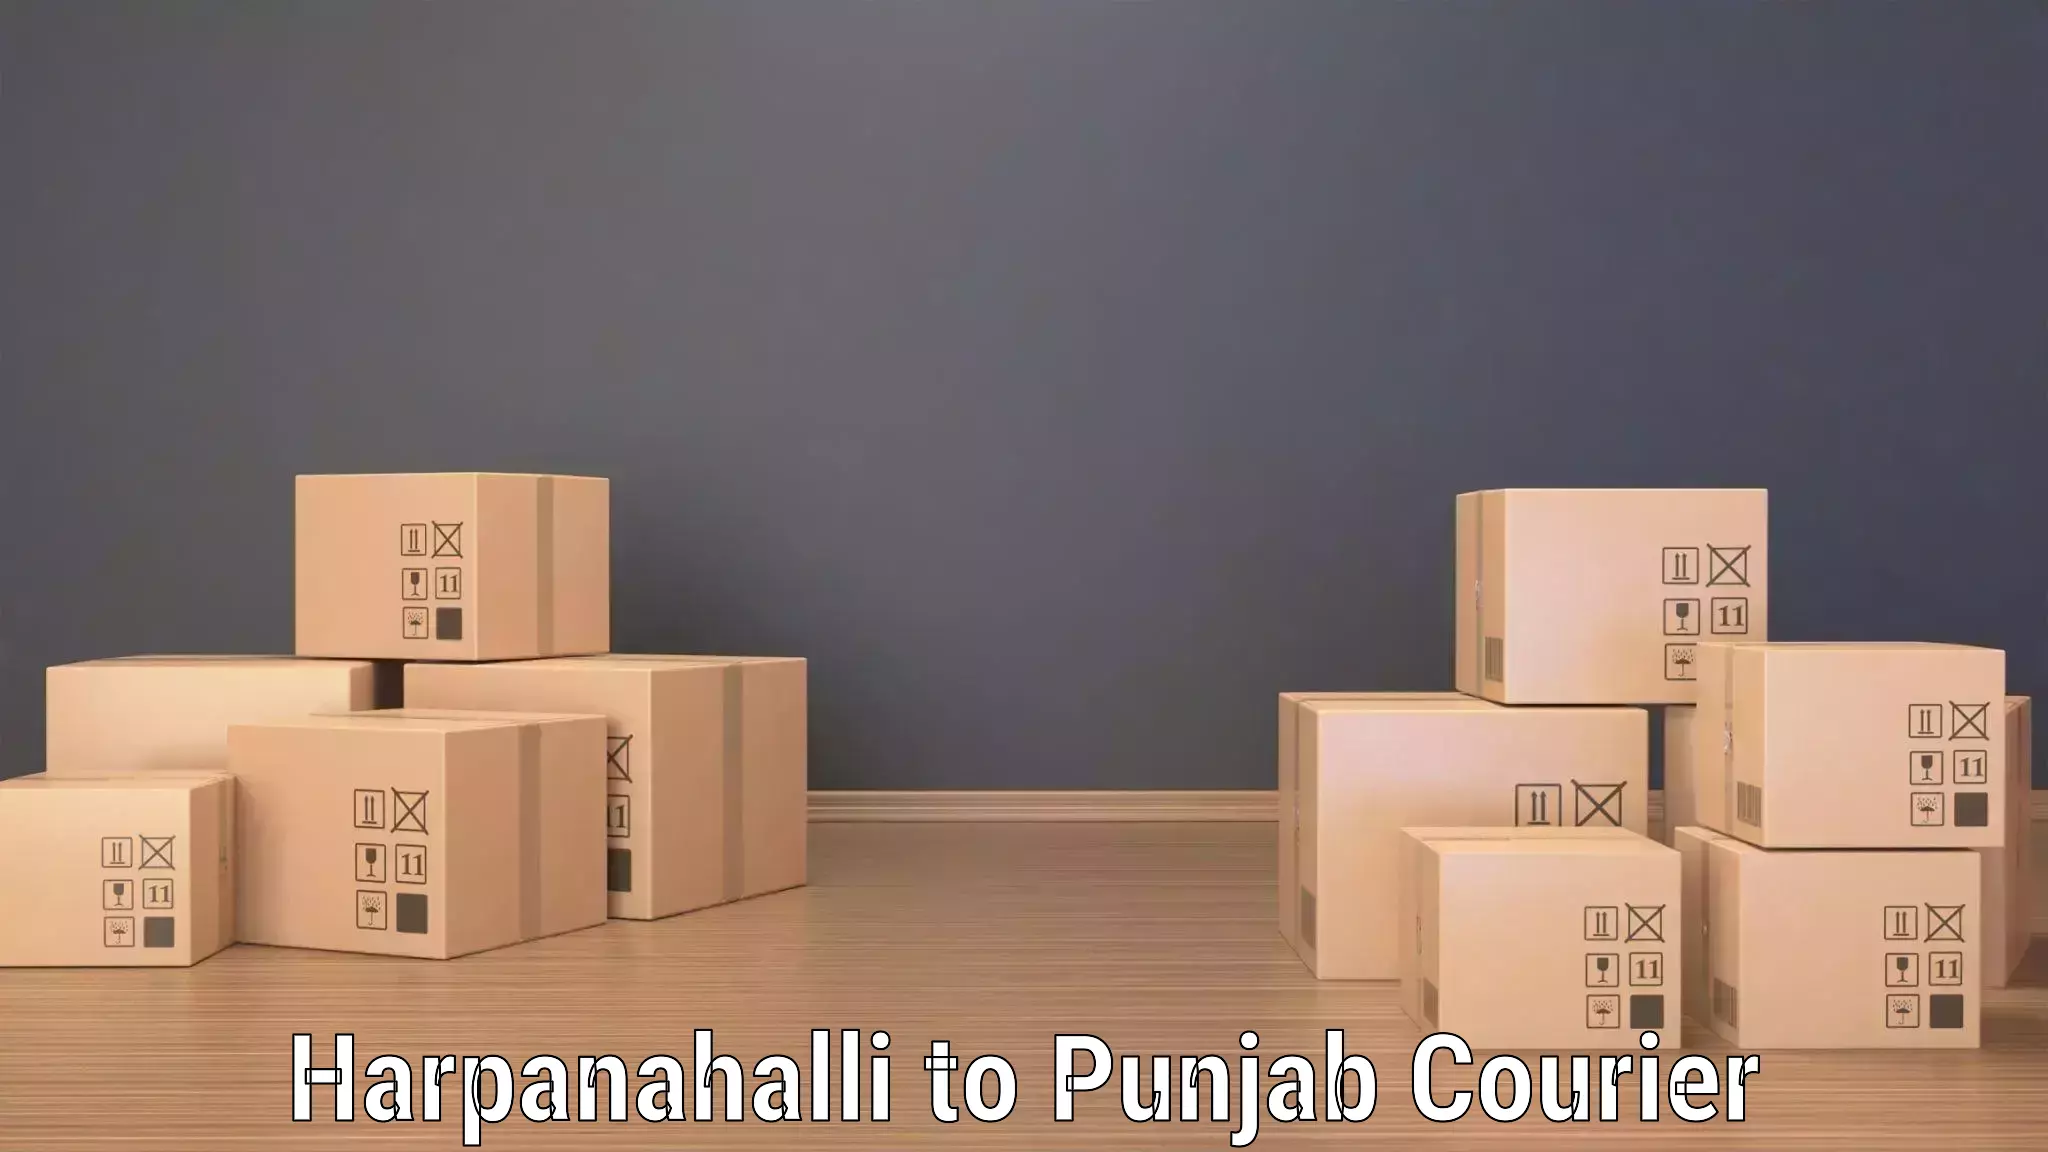 On-demand delivery Harpanahalli to Kotkapura